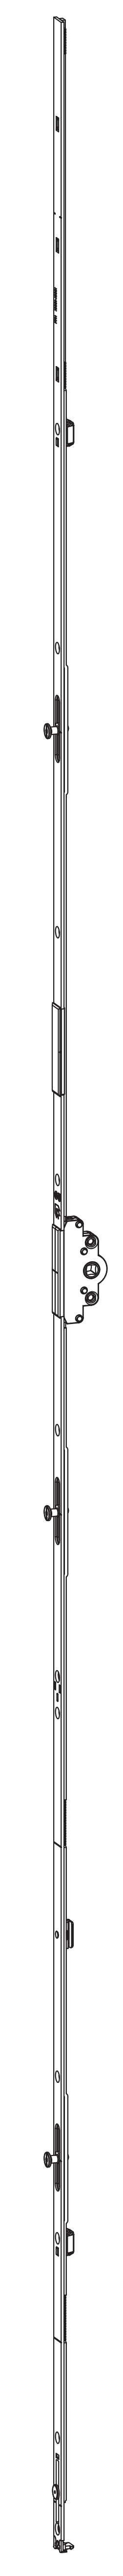 GU-ITALIA -  Cremonese UNI-JET anta ribalta altezza maniglia fissa con piedino senza dss per ribalta - gr / dim. 1690 - entrata 25 - alt. man. 600 - lbb/hbb 1601 - 1850